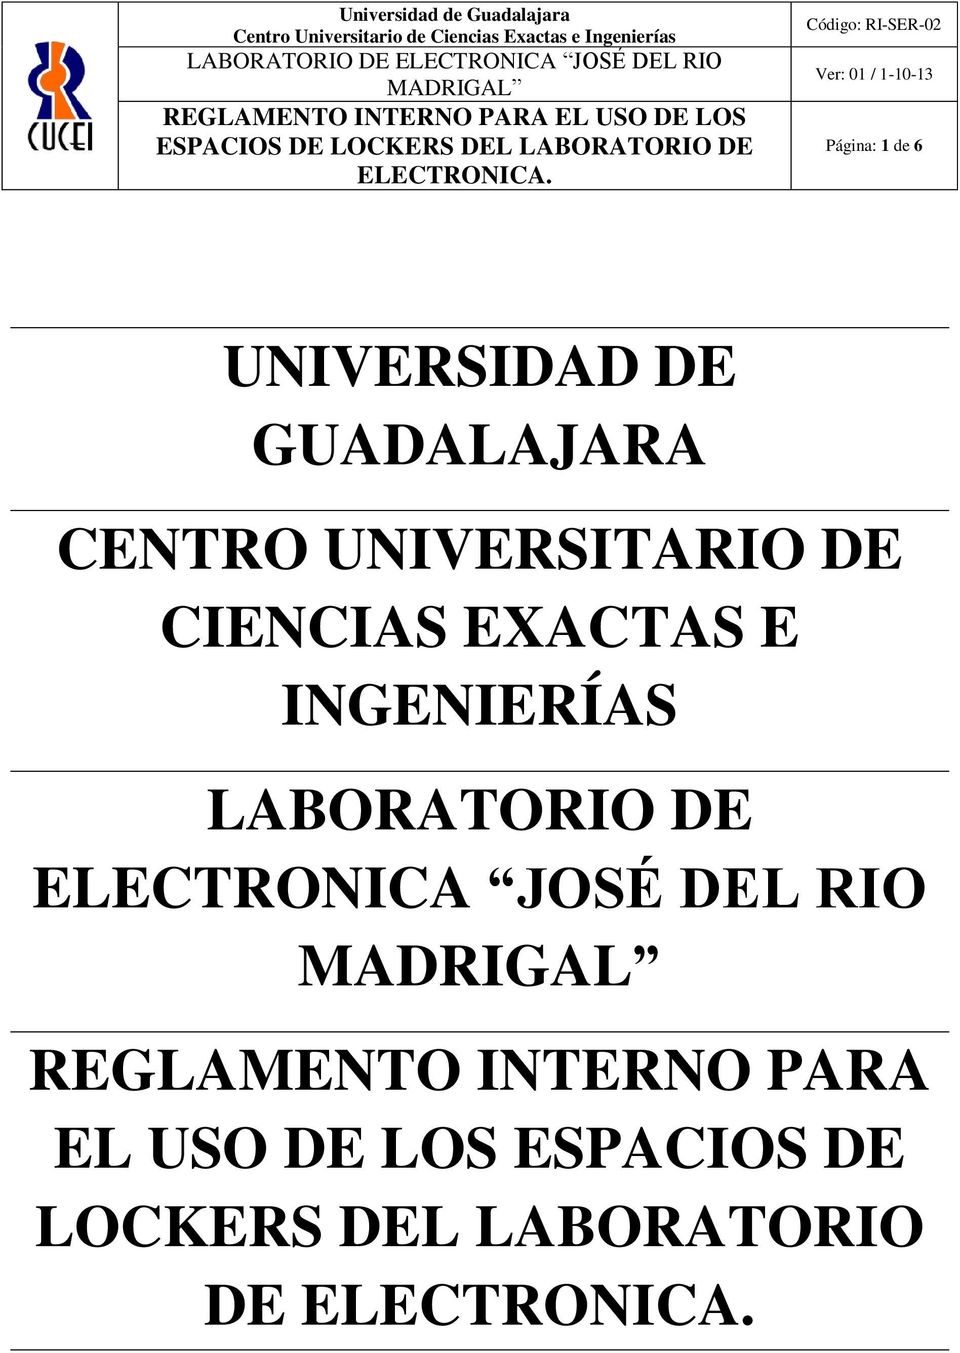 LABORATORIO DE ELECTRONICA JOSÉ DEL RIO REGLAMENTO